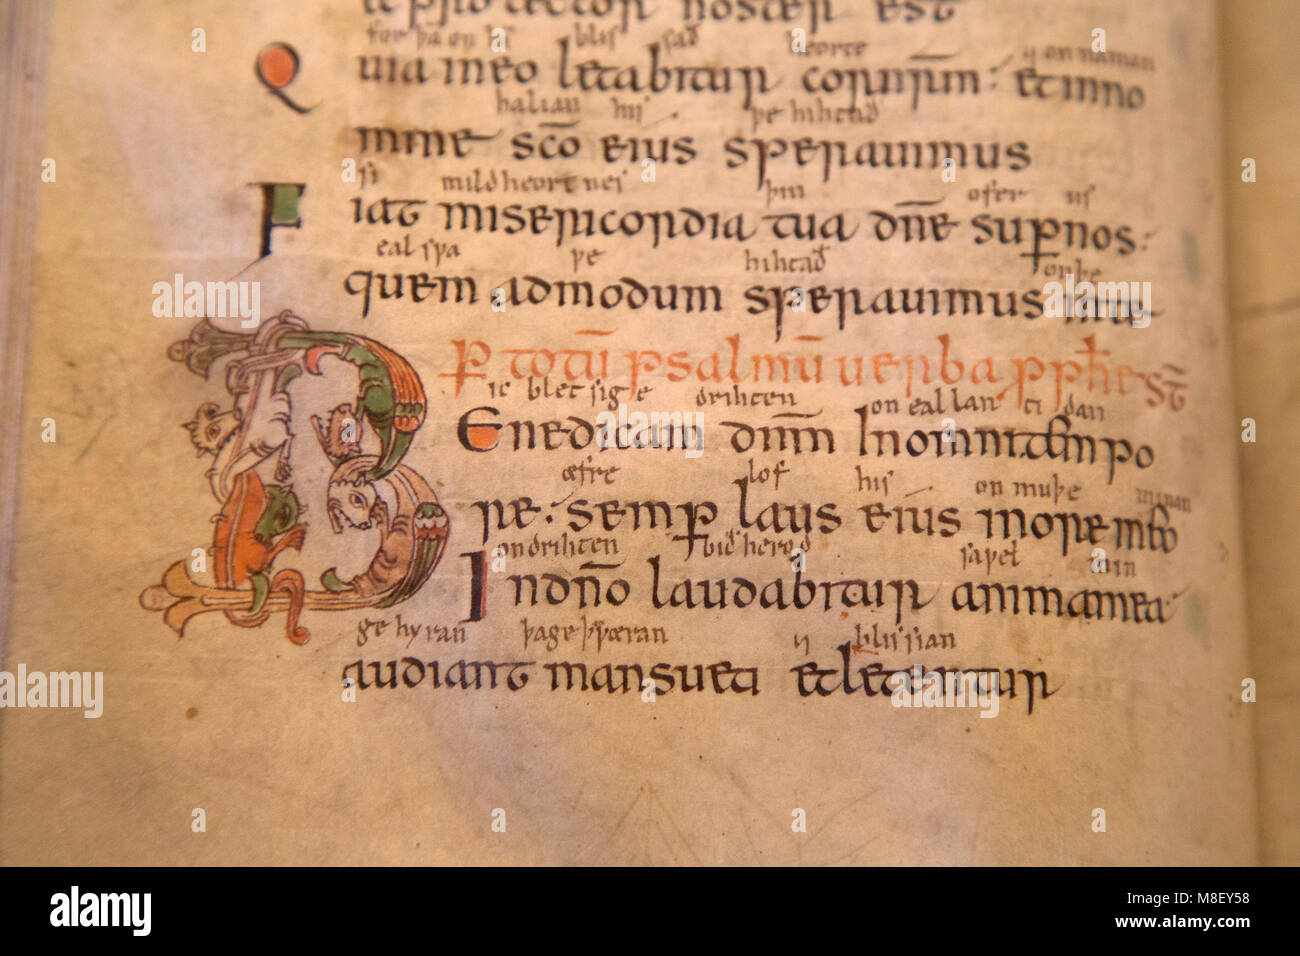 Manuscrit médiéval dans la bibliothèque de la cathédrale de Salisbury dans le Wiltshire, Angleterre. Le livre date du Xe siècle. Banque D'Images